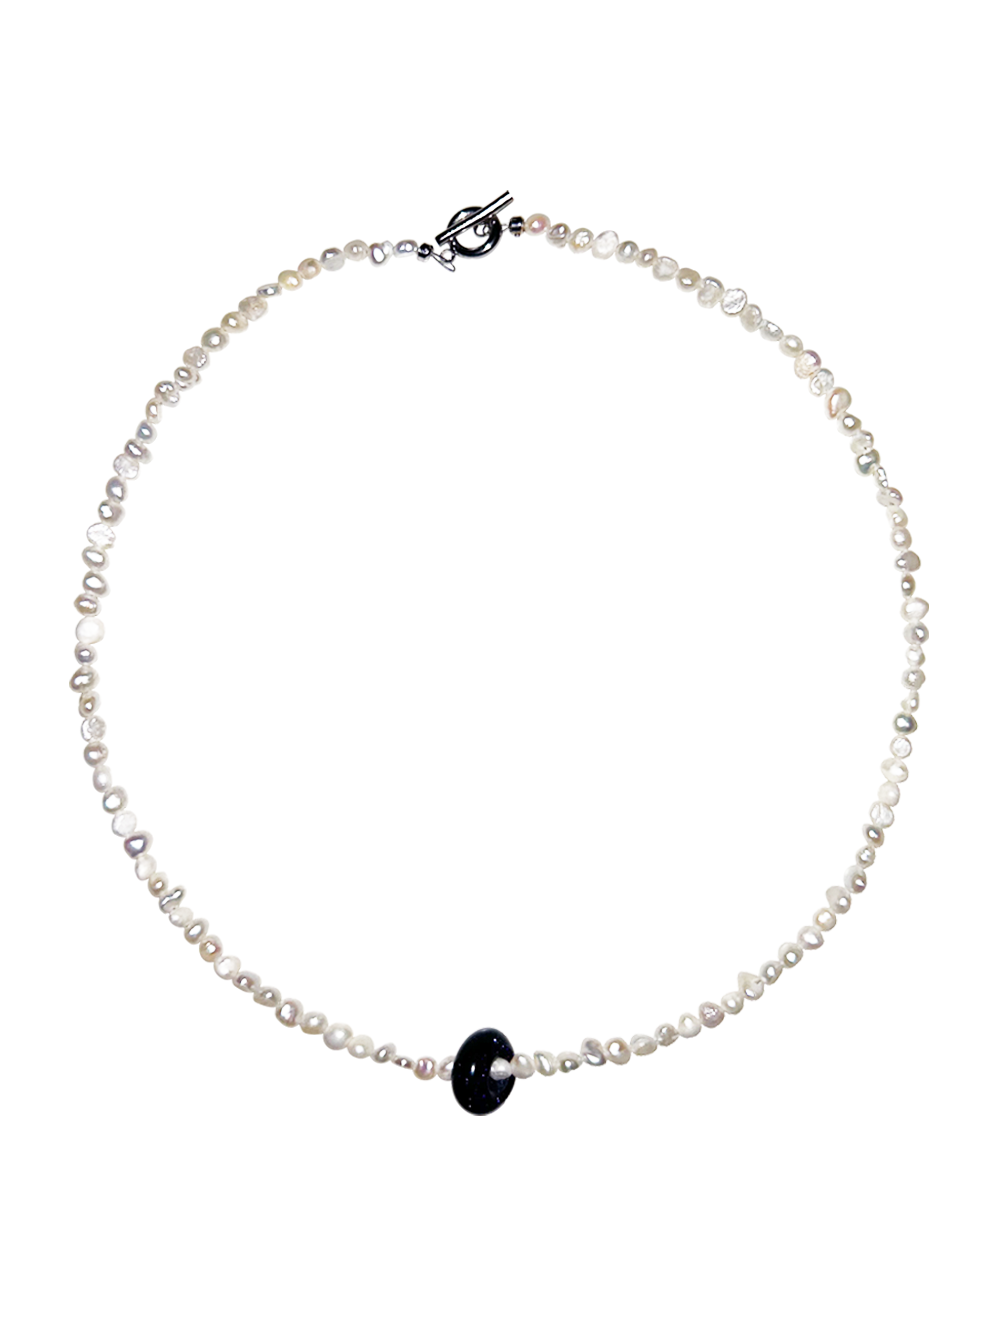 Gemstone Necklace - Midnight Blue